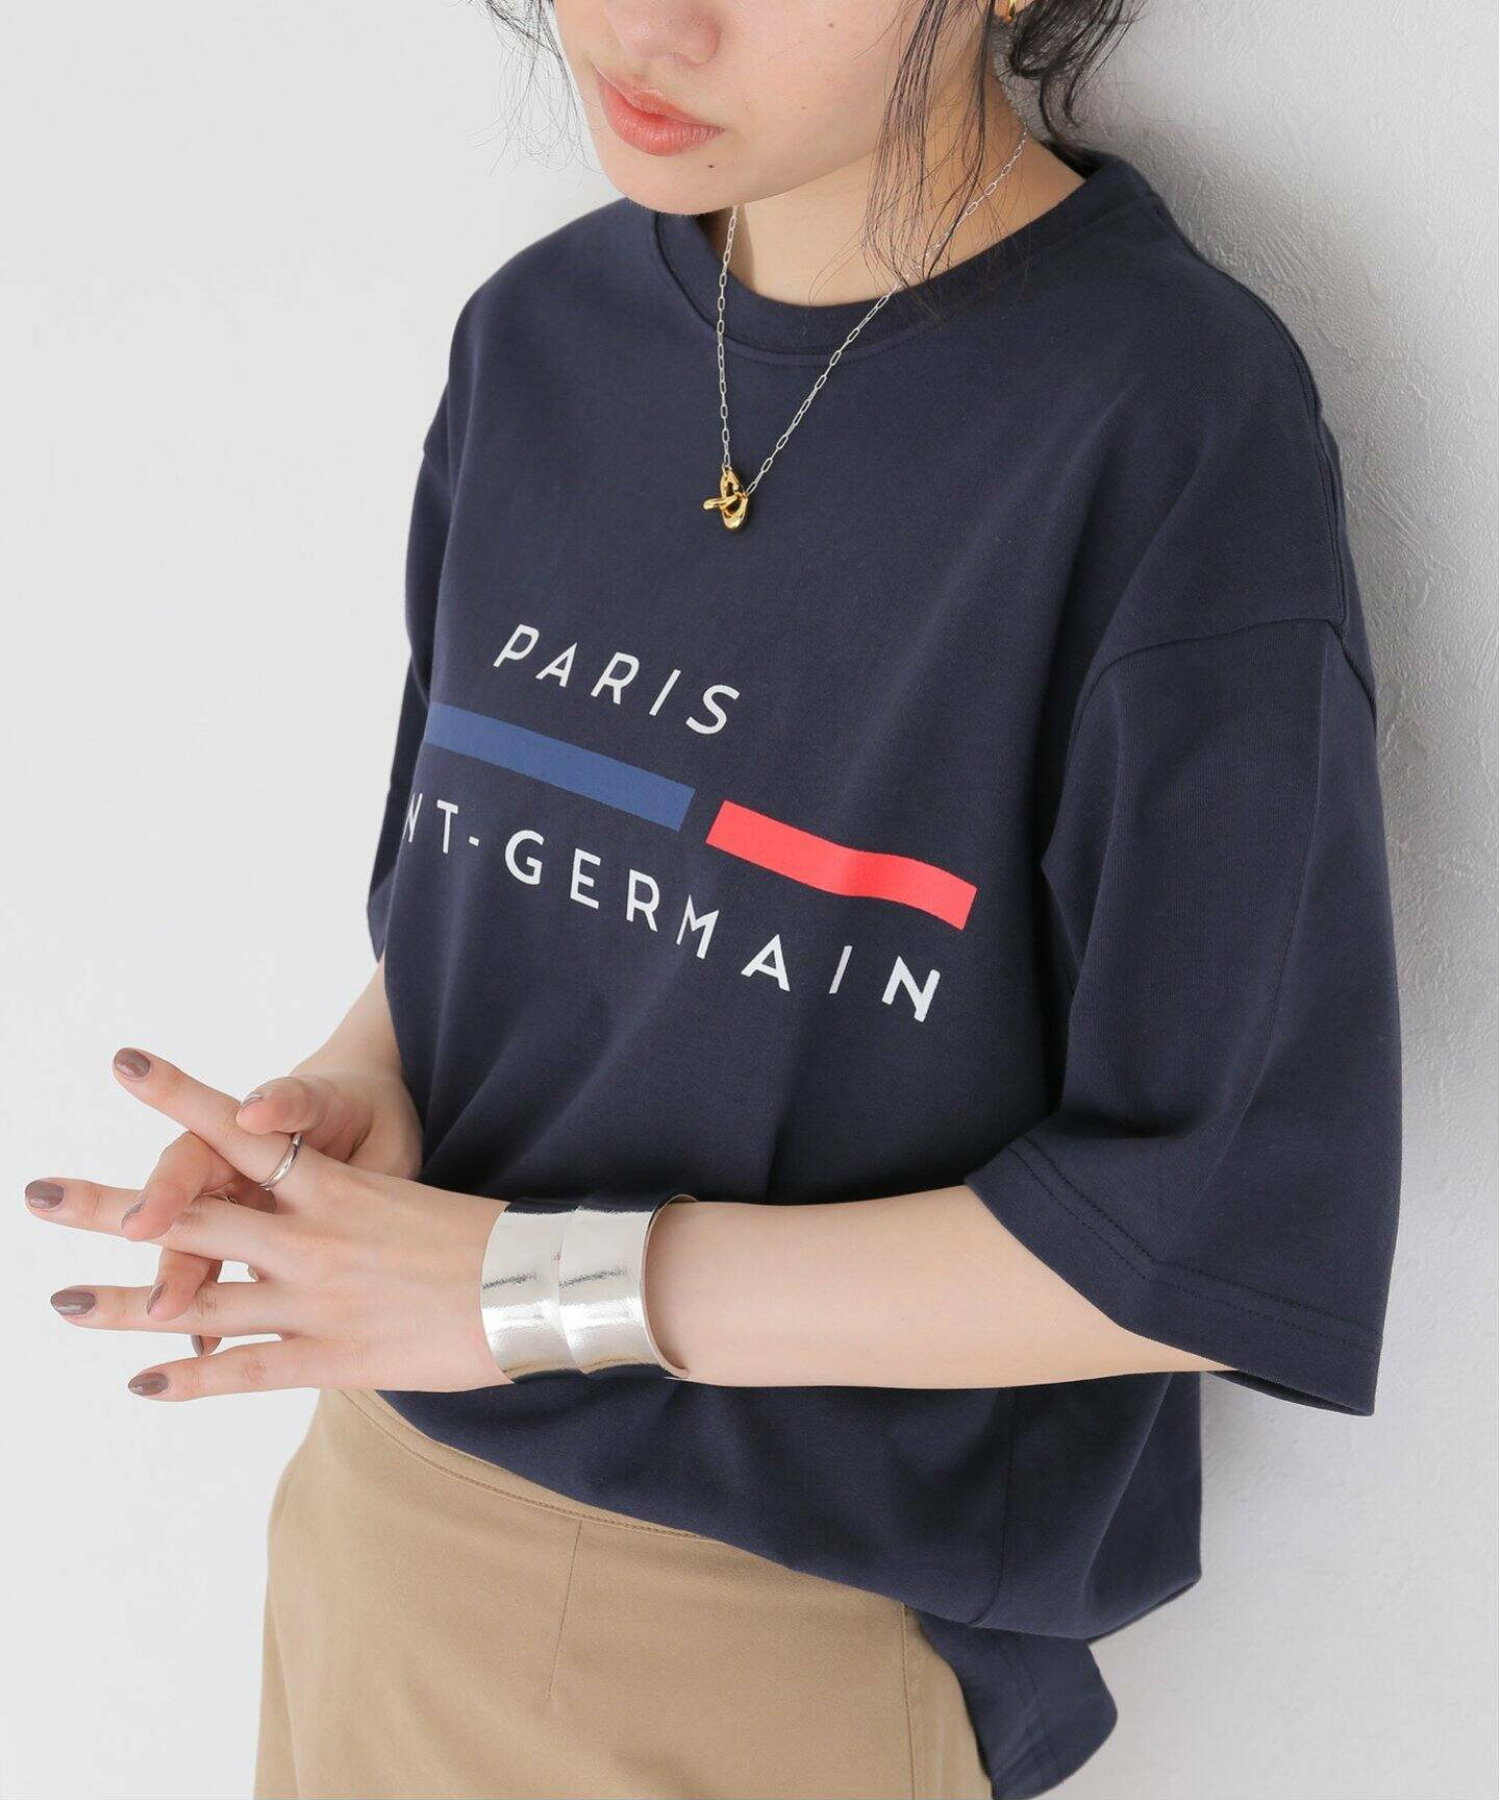 【Paris Saint-Germain】ROUGE ET BLEU プリント Tシャツ